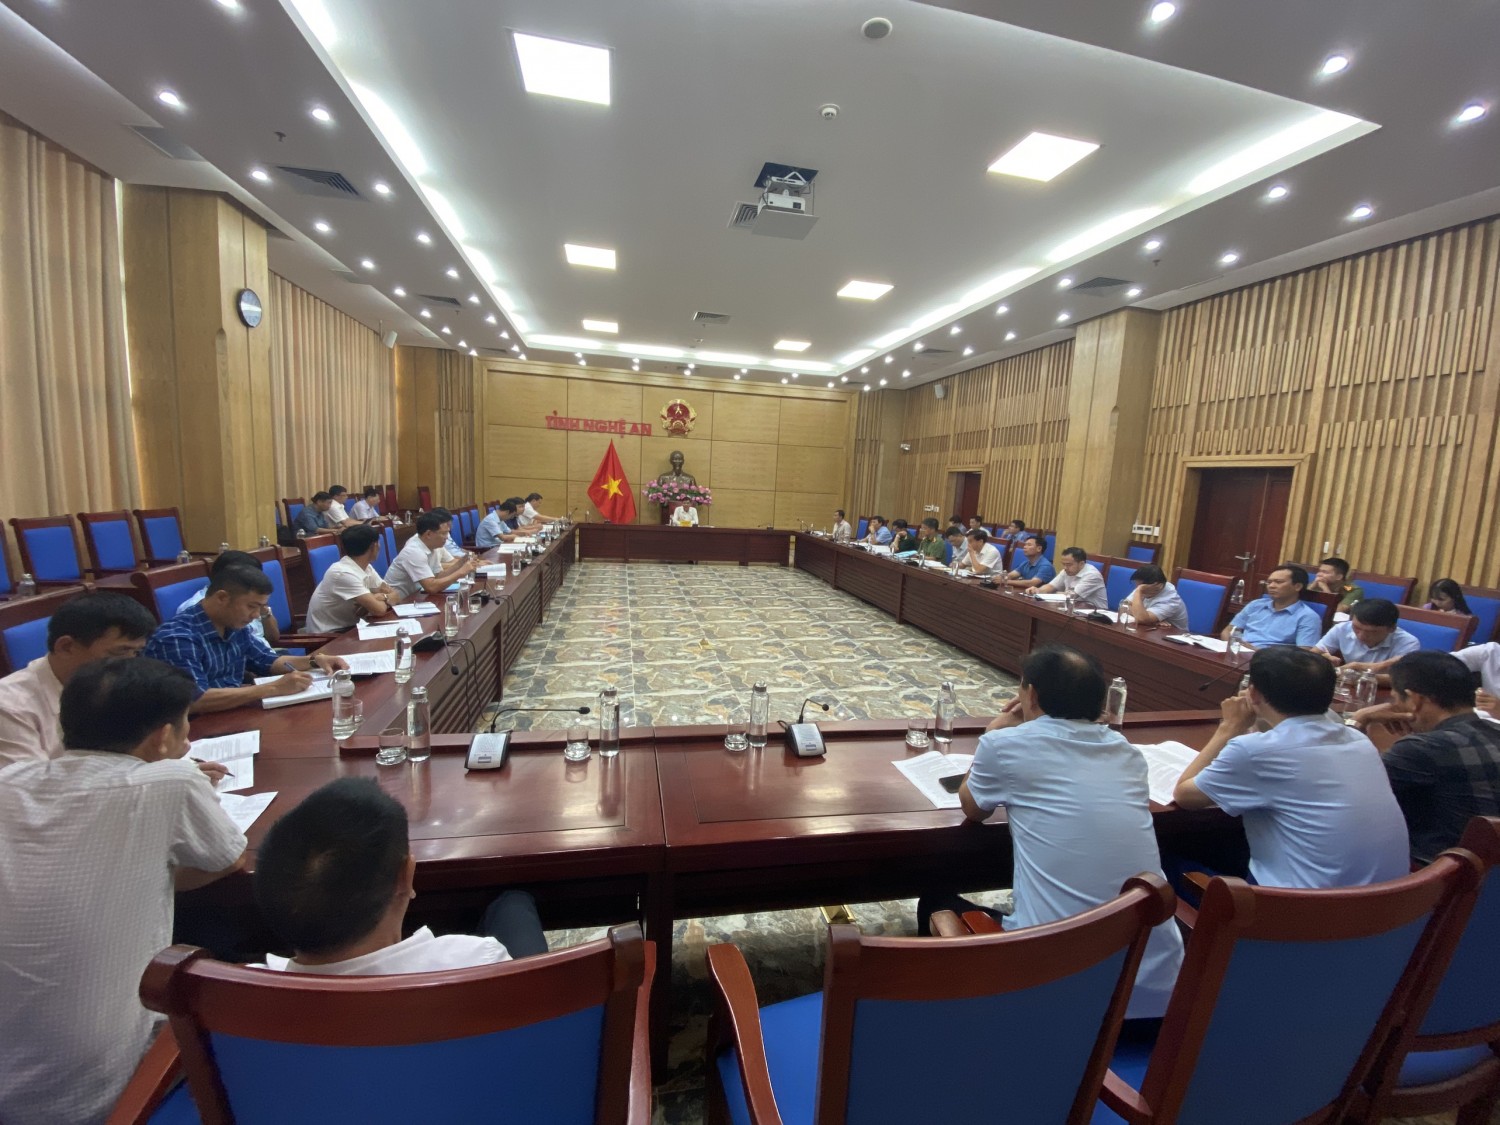 UBND Tỉnh Nghệ An tổ chức Hội Nghị bàn về giải pháp nâng cao hiệu quả và tháo gỡ khó khăn trong khai thác hải sản.